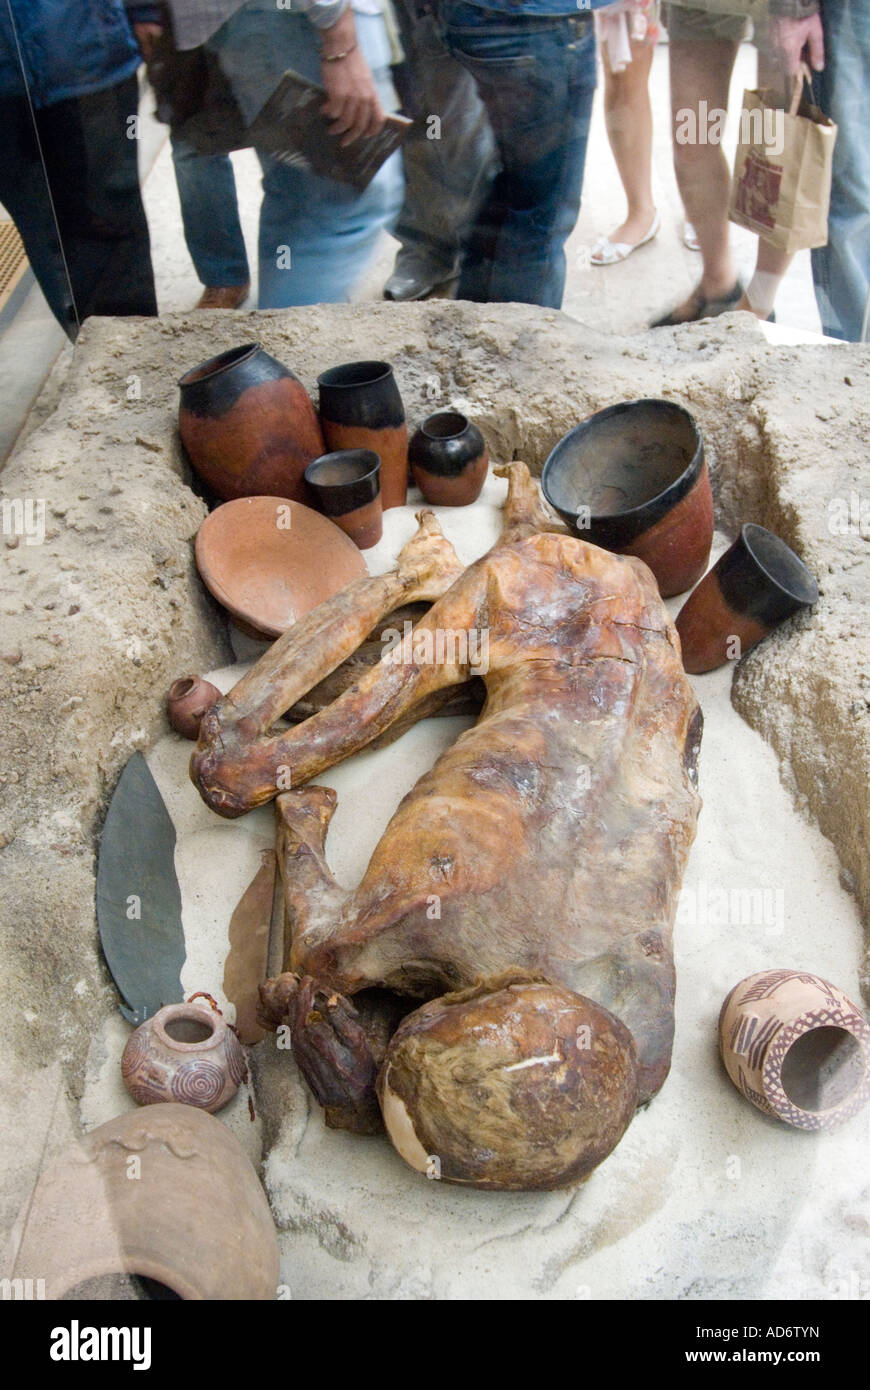 Gebelein, un homme de la momie naturelle période prédynastique enterrés autour de 3500 avant J.-C., le British Museum, London, UK Banque D'Images